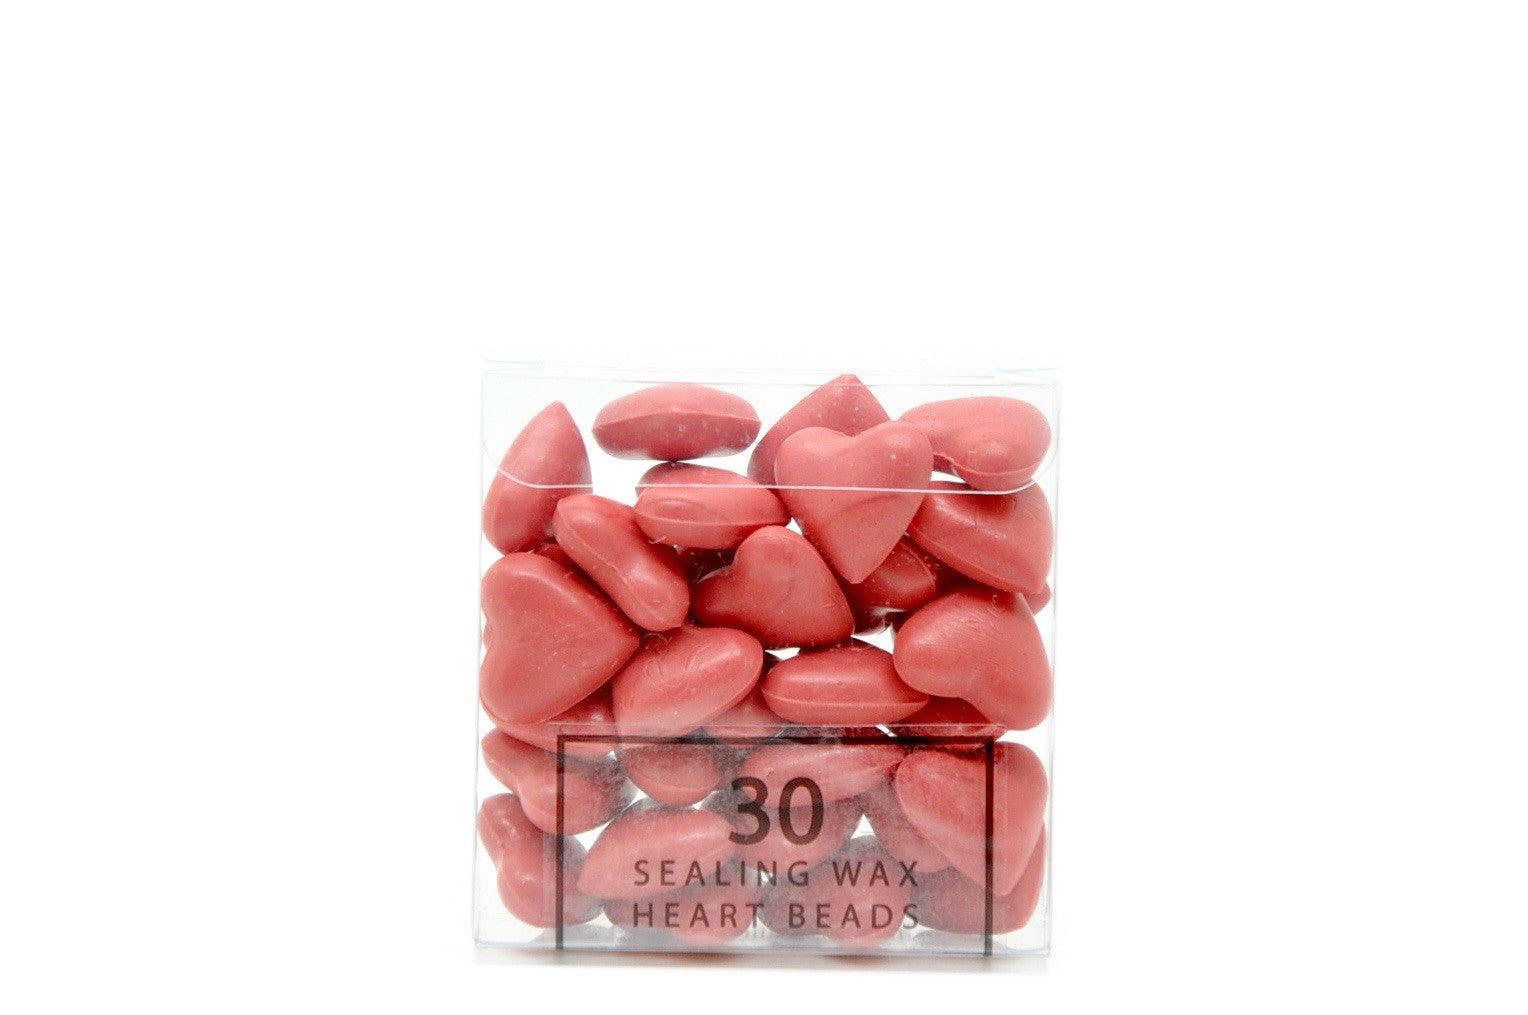 Pink Sealing Wax Heart Bead - Backtozero B20 - Heart Bead, Heart Wax, Pink, sale, Sealing Wax, Wax Bead